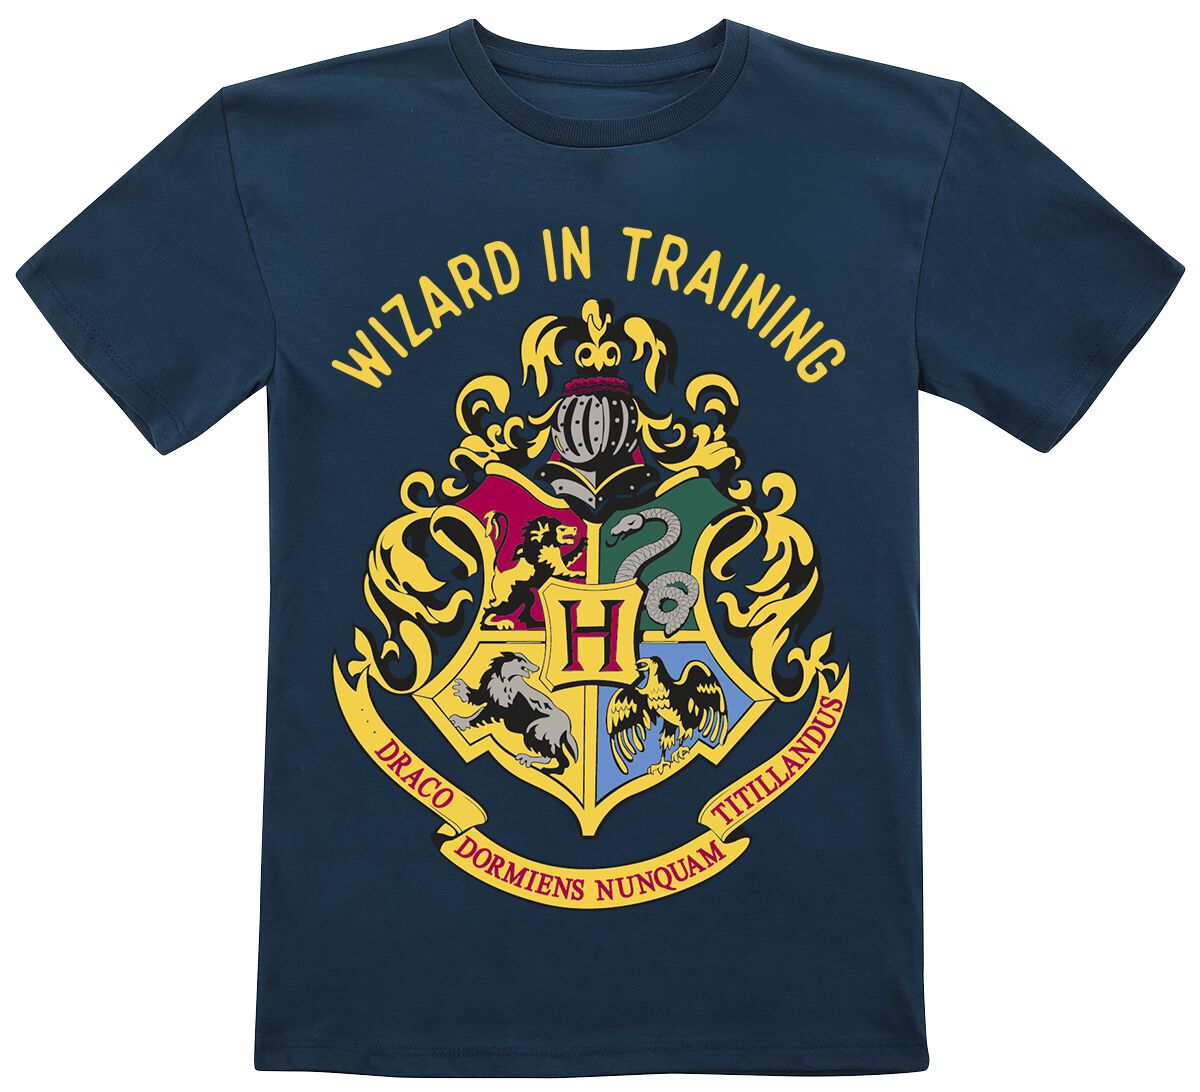 Harry Potter T-Shirt - Kids - Wizard In Training - 104 bis 164 - für Mädchen & Jungen - Größe 164 - dunkelblau  - EMP exklusives Merchandise!